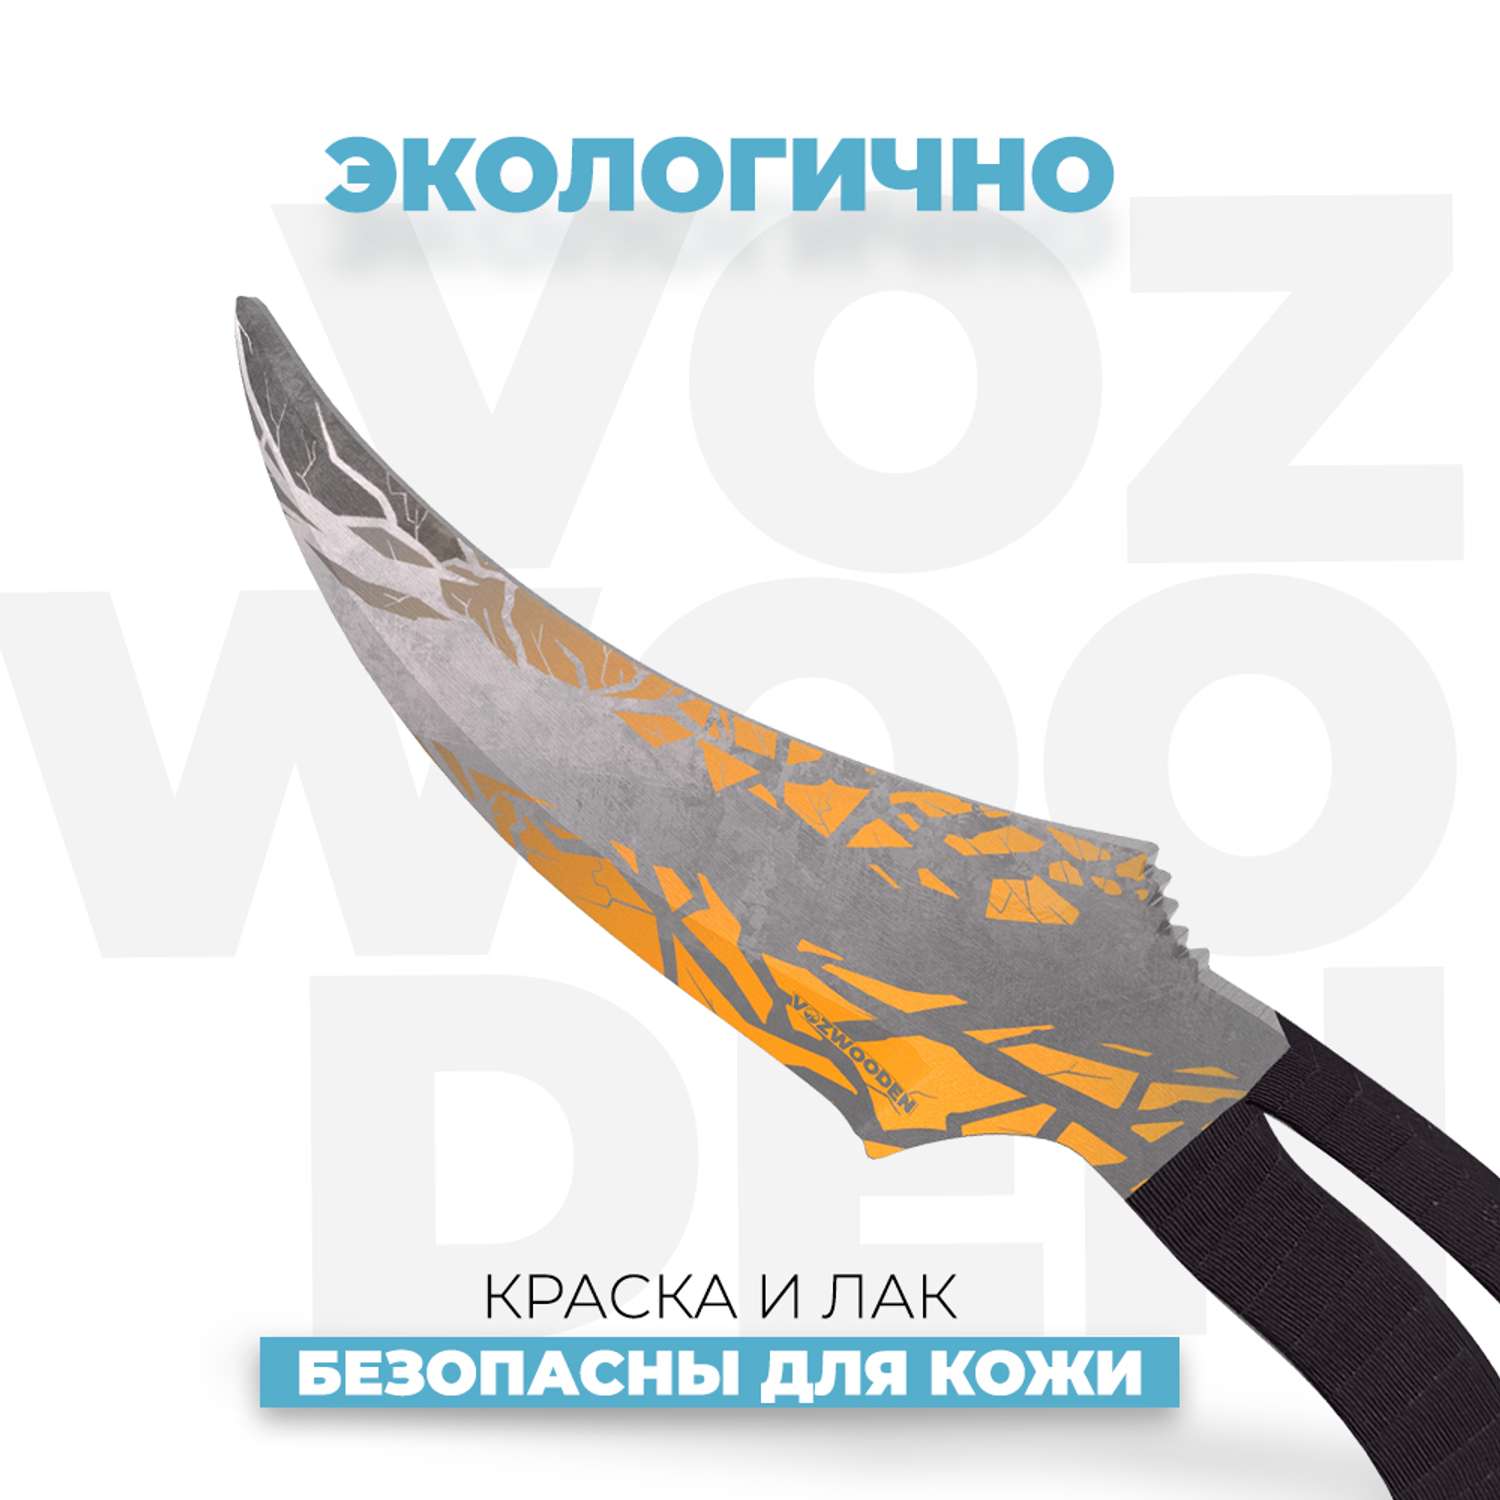 Деревянный нож VozWooden Фанг Флейр Стандондофф 2 - фото 4